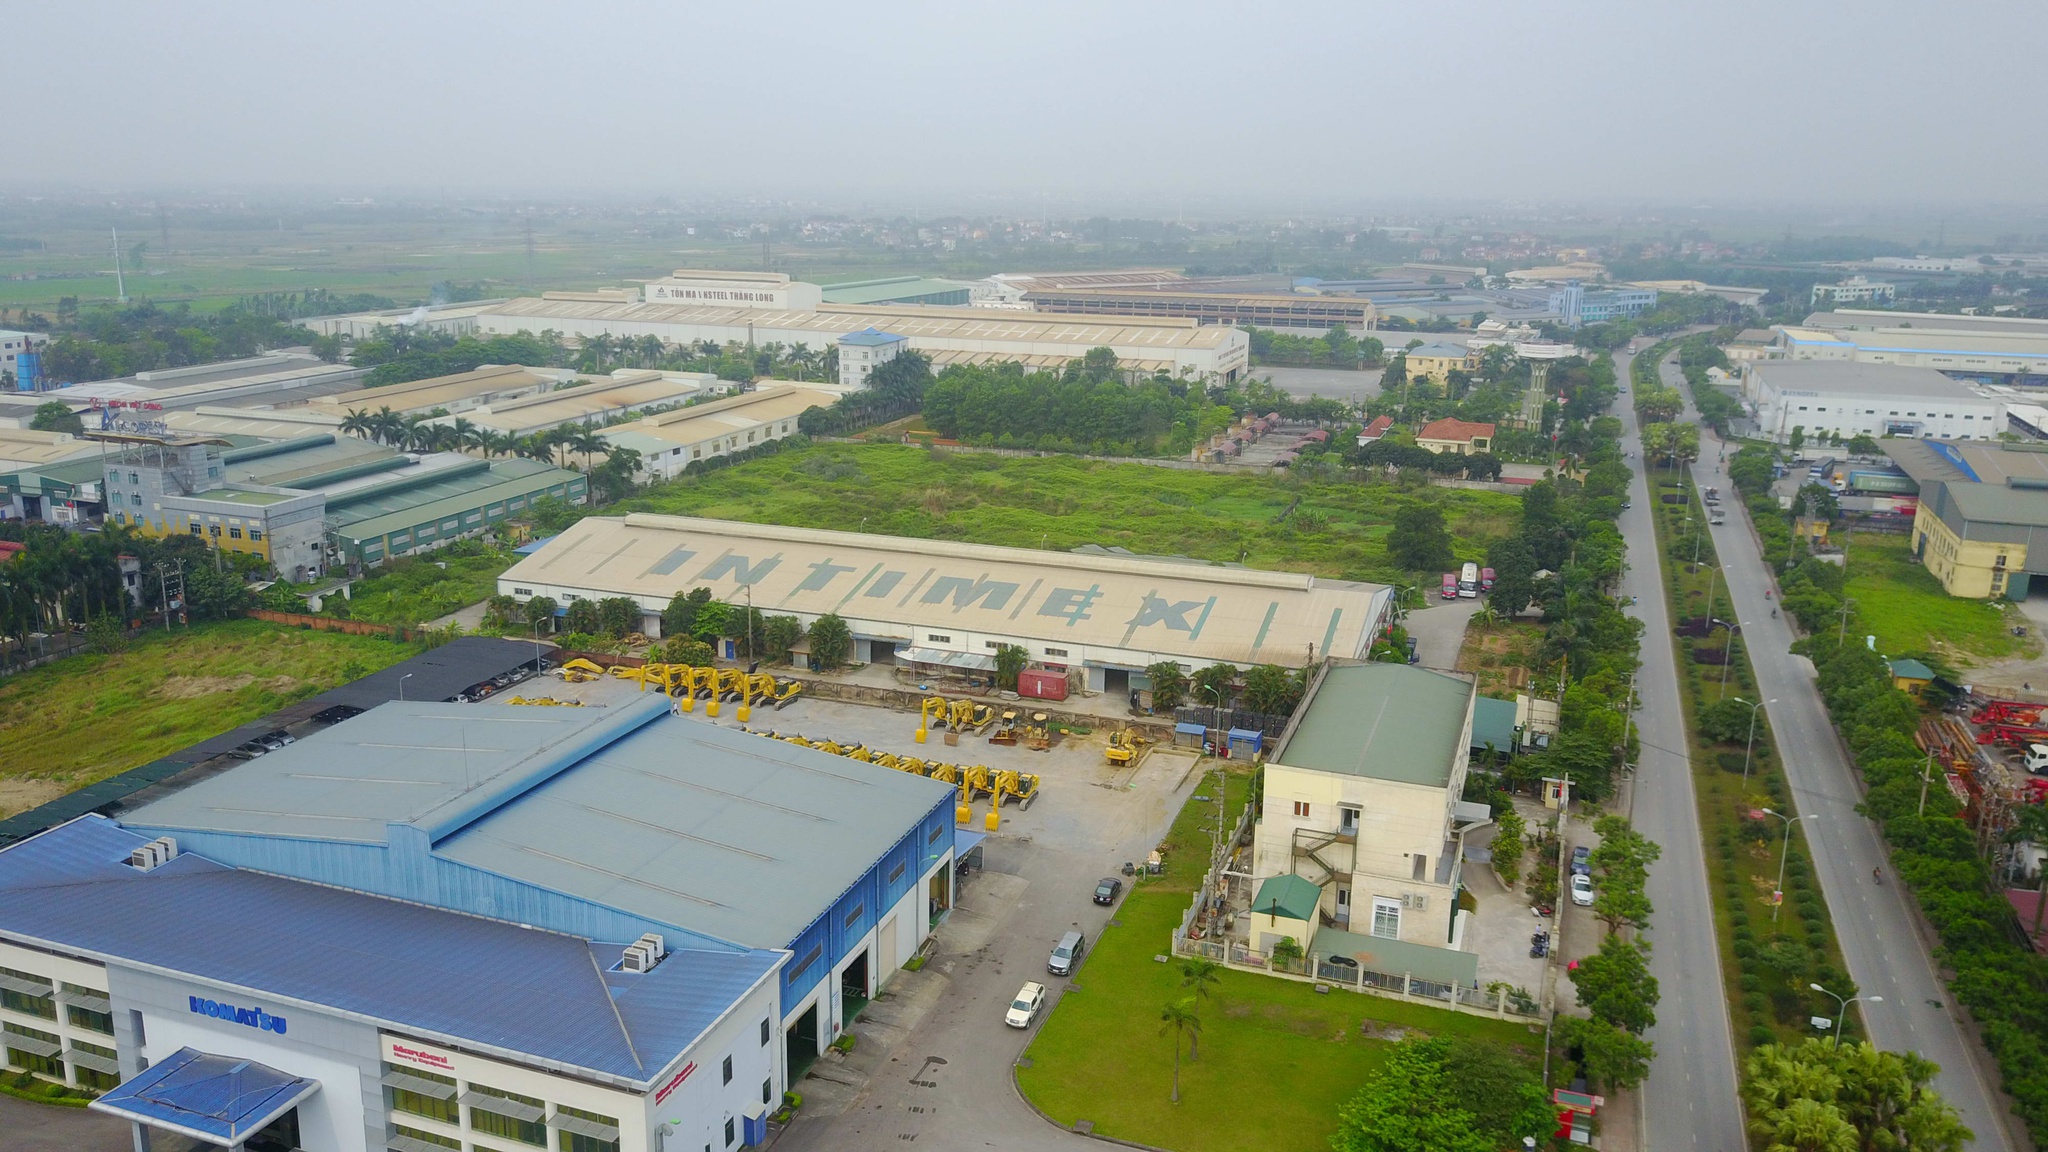 Ngoài việc xóa 3 khu công nghiệp, UBND TP.HCM cũng kiến nghị bổ sung thêm 1 khu công nghiệp rộng gần 700 ha /// Ảnh: Xuân Long